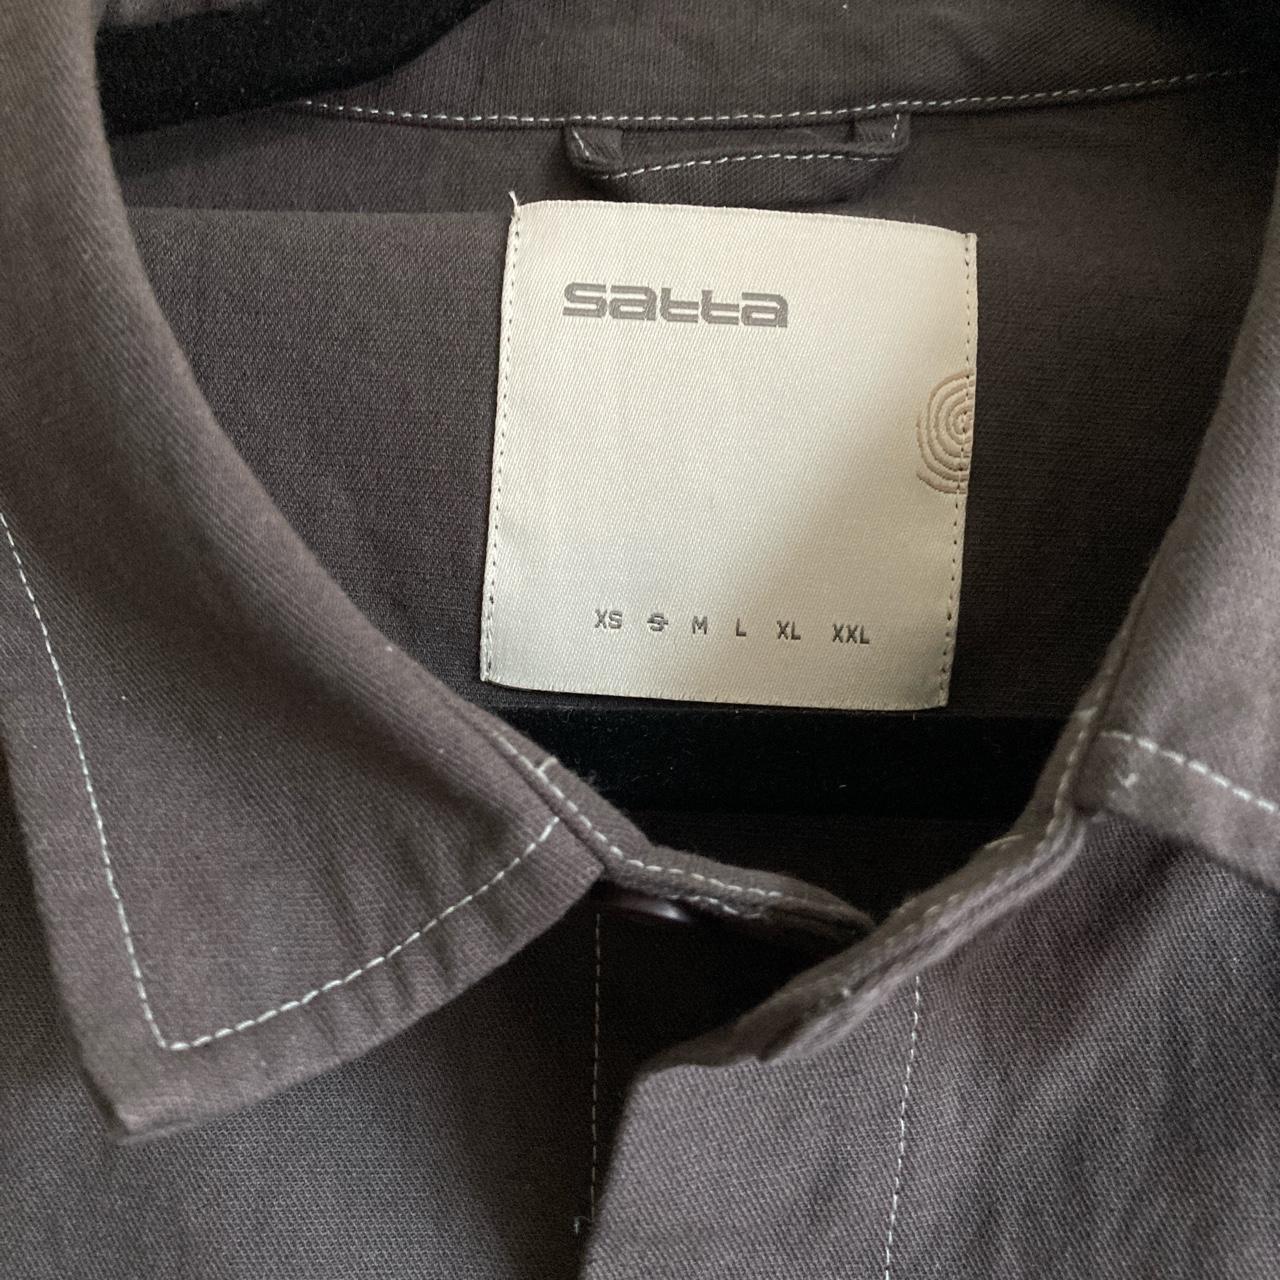 Product Image 2 - Satta overshirt 
Large chest pocket